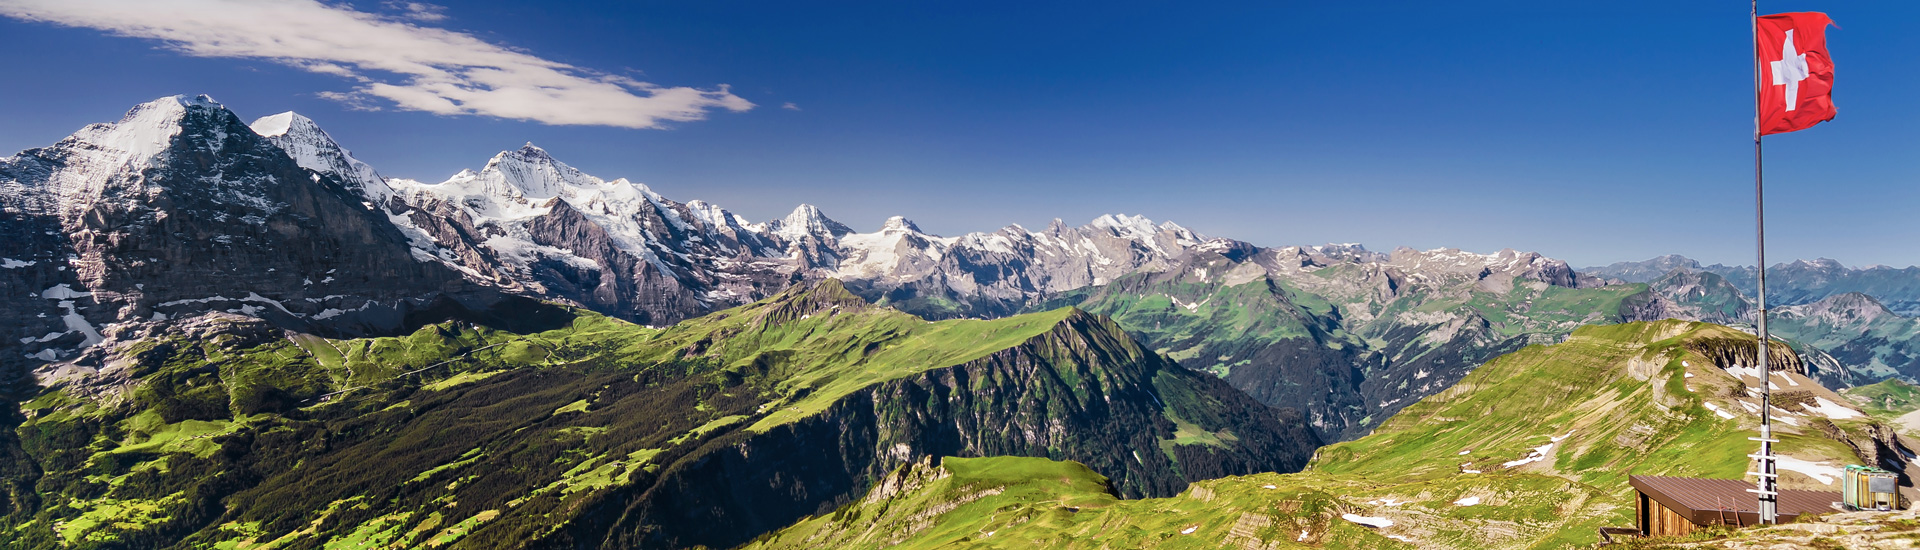 Veranstaltungen in den Schweizer Alpen planen